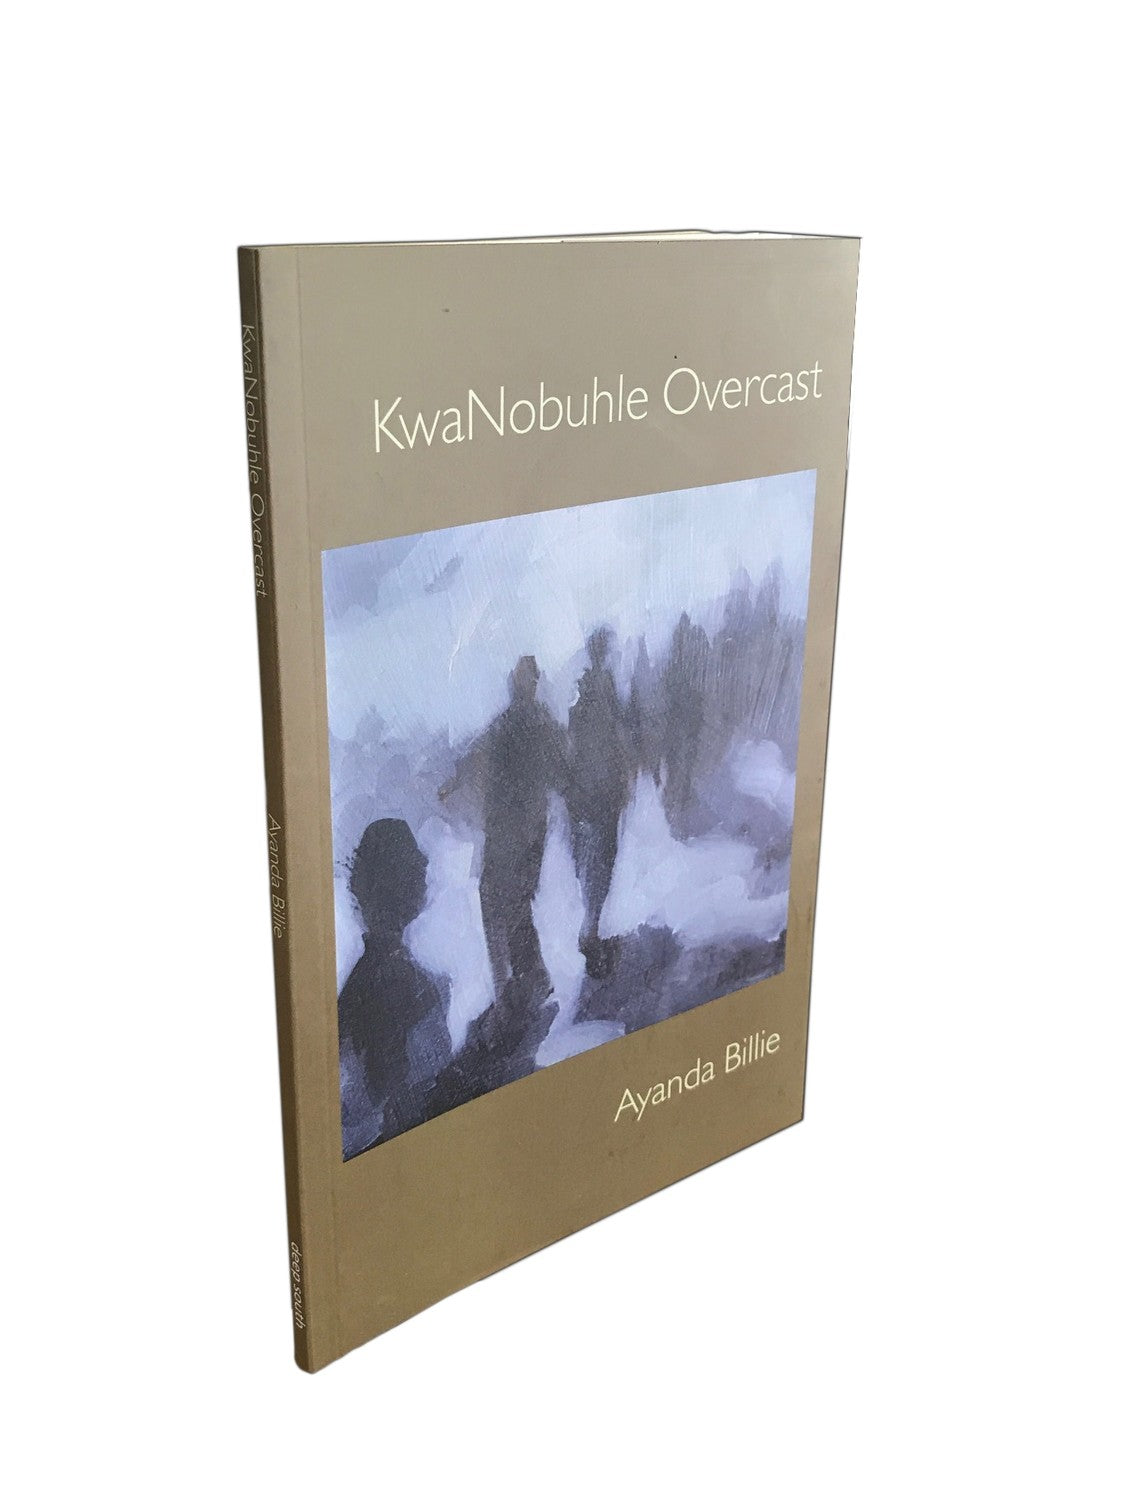 KwaNobuhle Overcast by Ayanda Billie